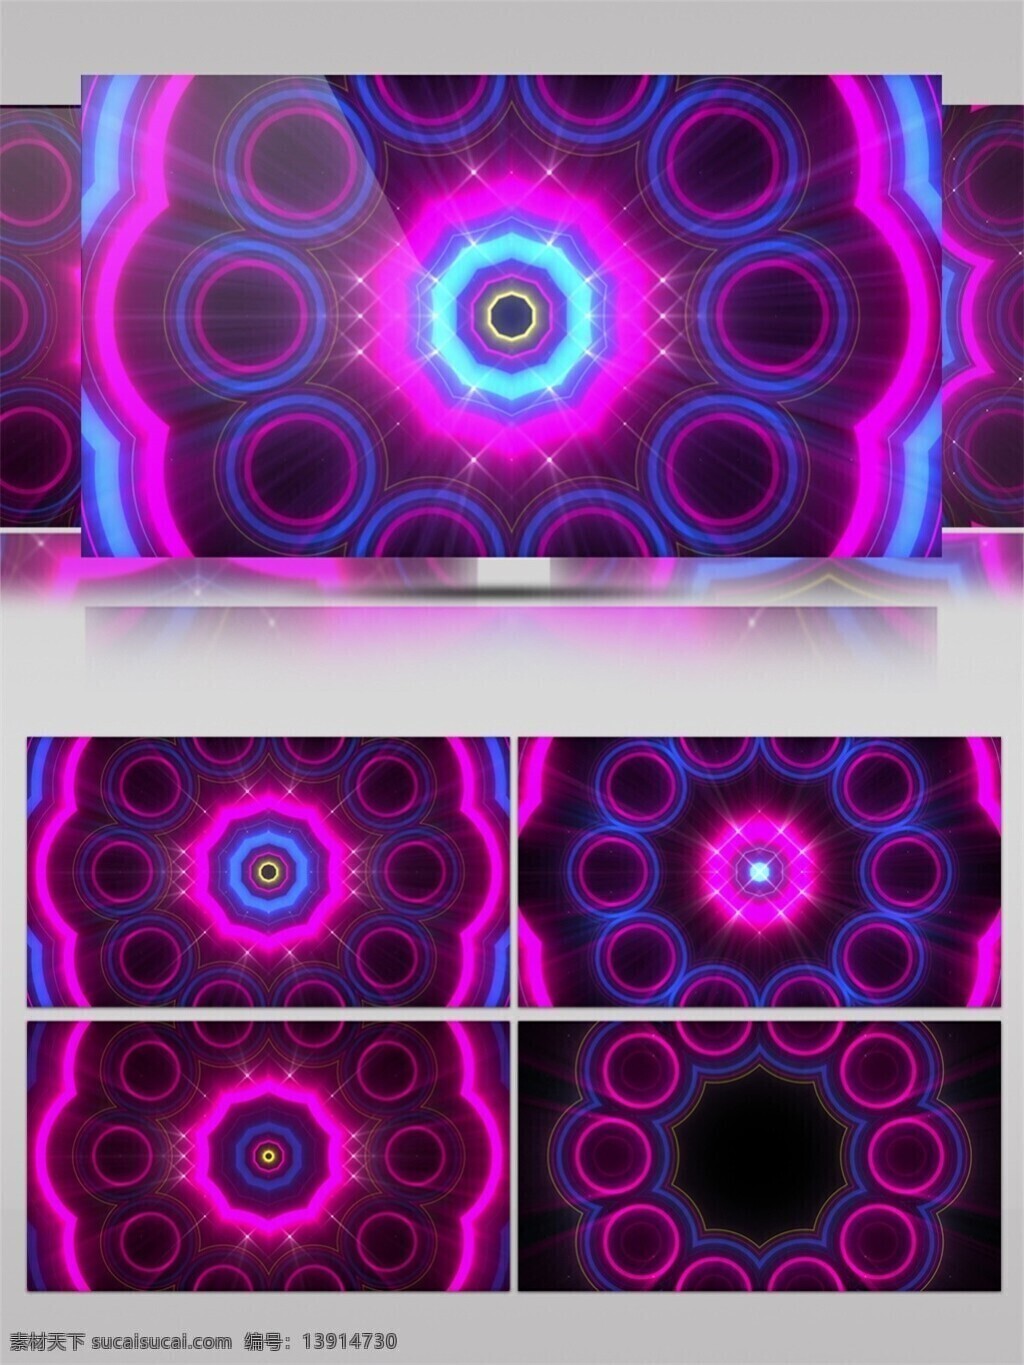 光斑散射 光束 激光 视觉享受 手机壁纸 紫色 光环 舞台 动态 视频